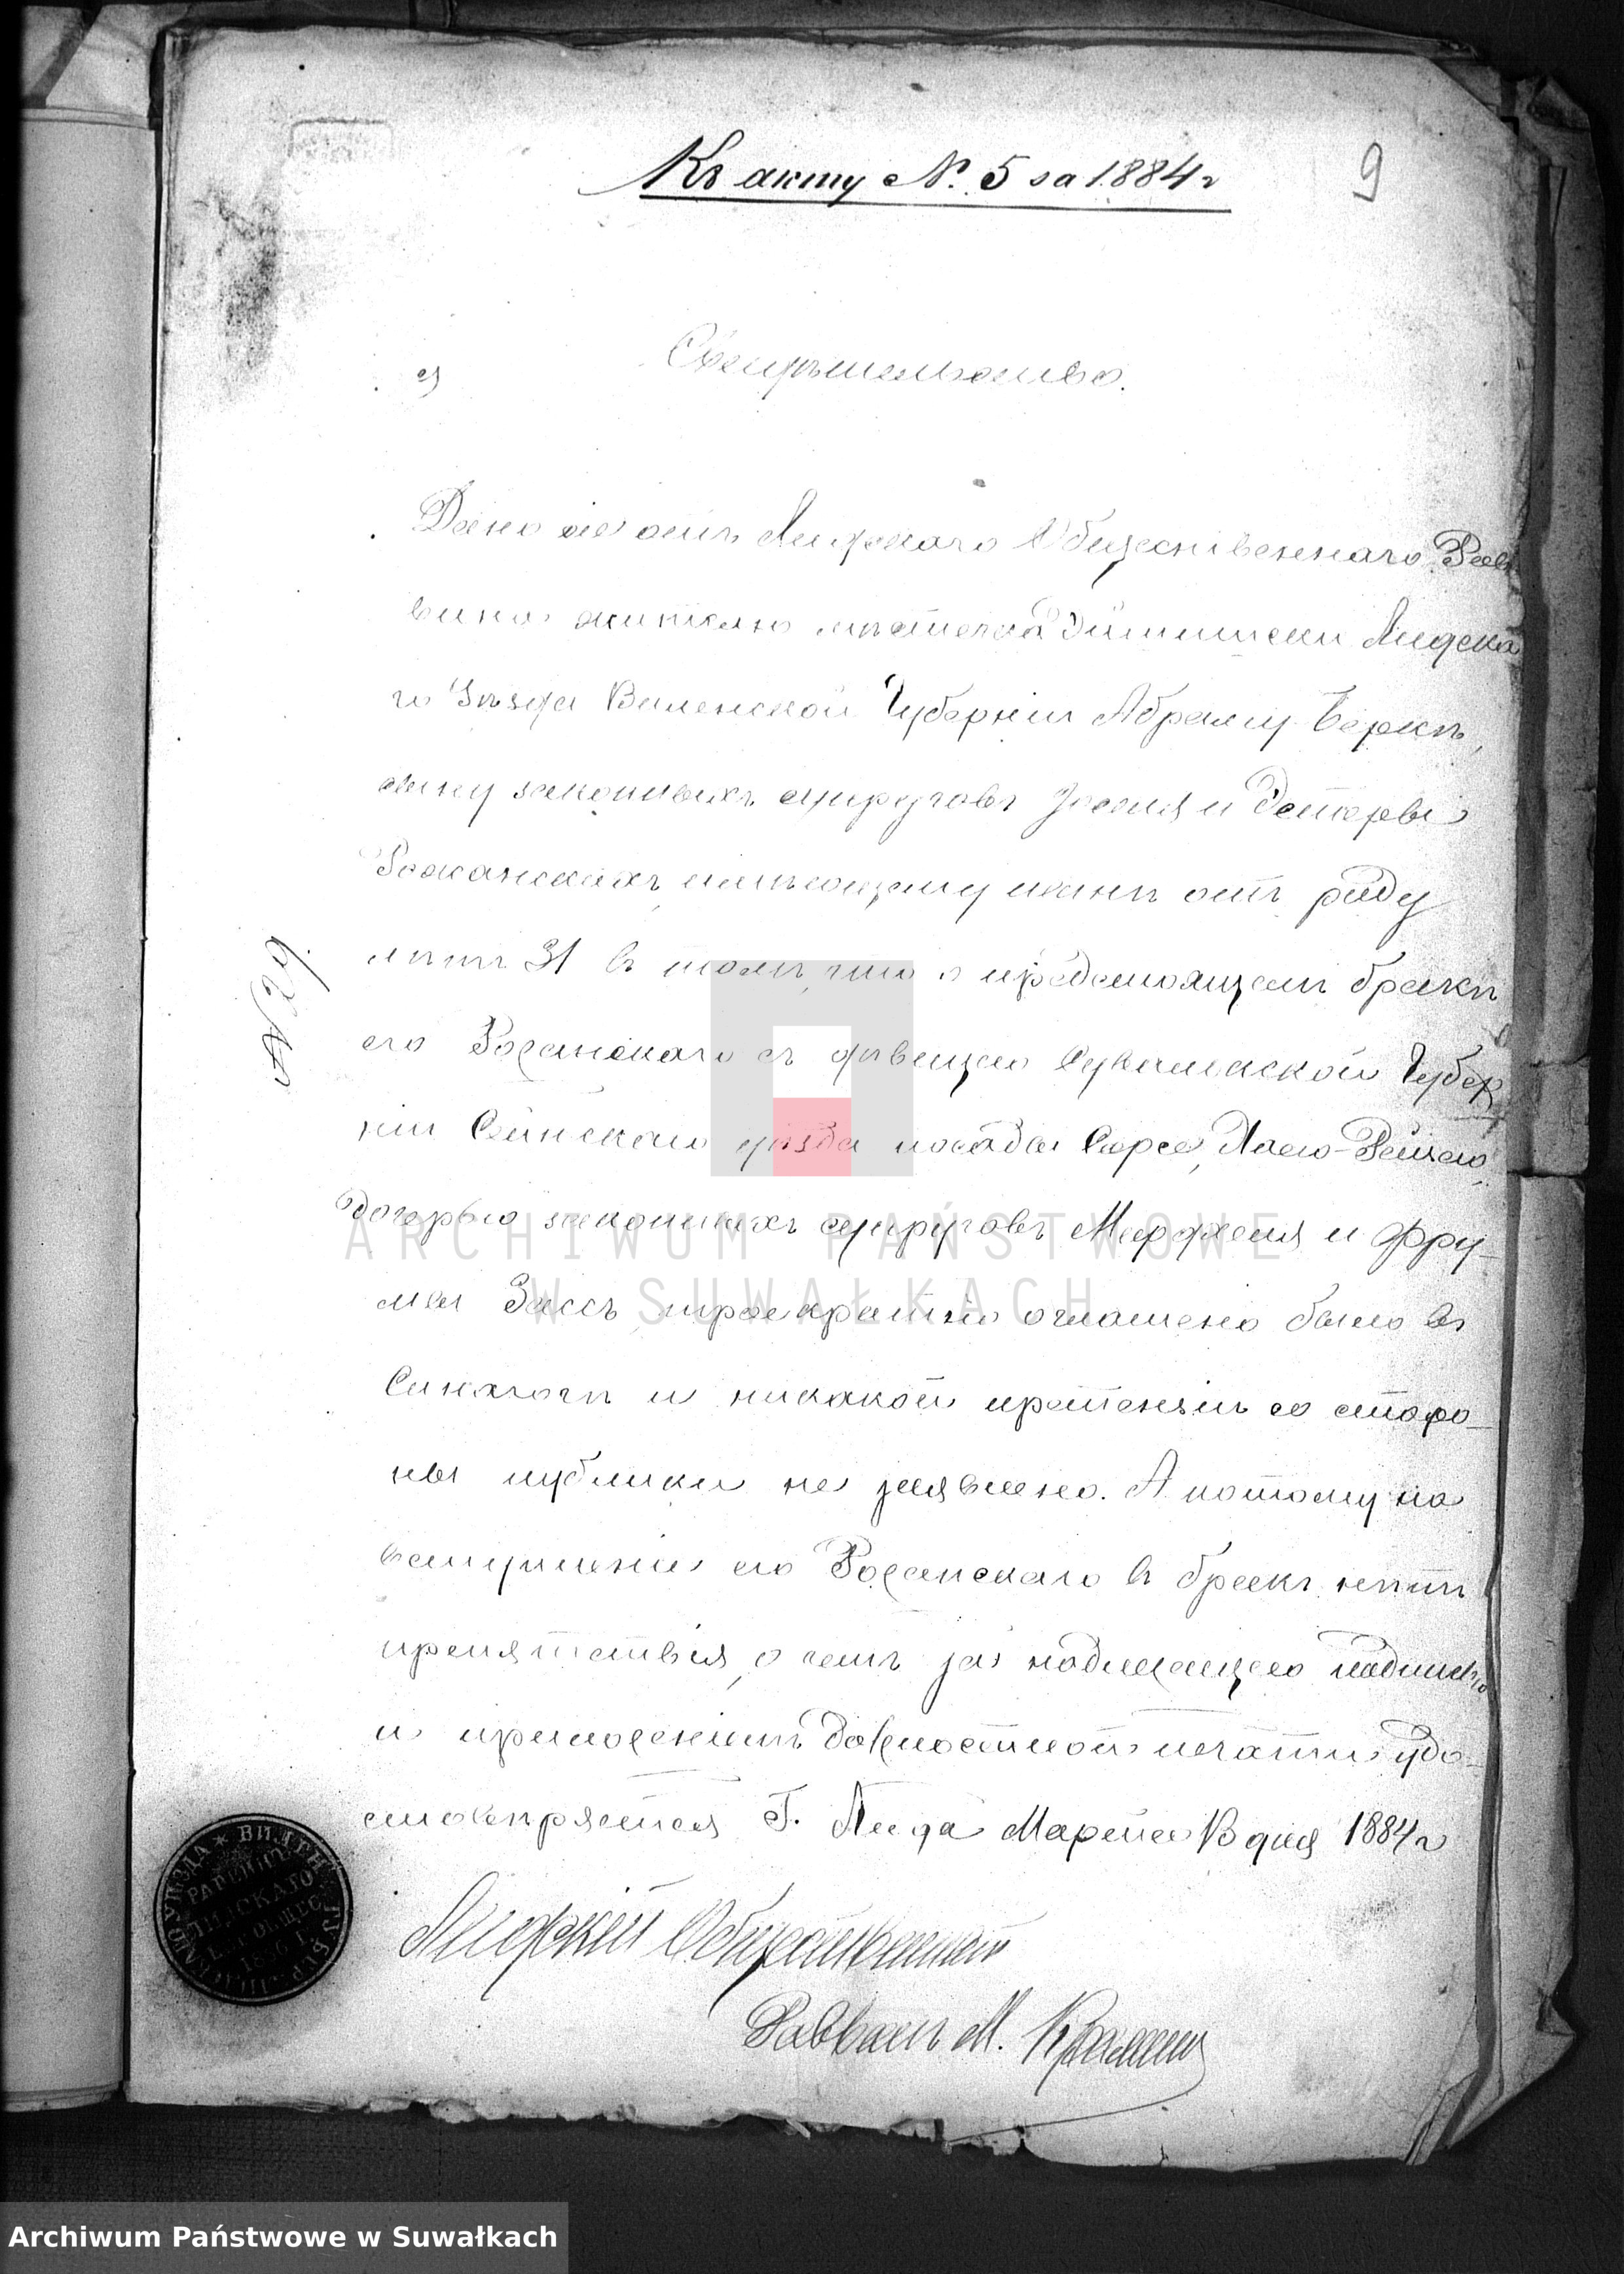 Skan z jednostki: Dokumenty o brakososčetavšichsja Evrejach v Serejskom božničnom Okruge za 1884 god